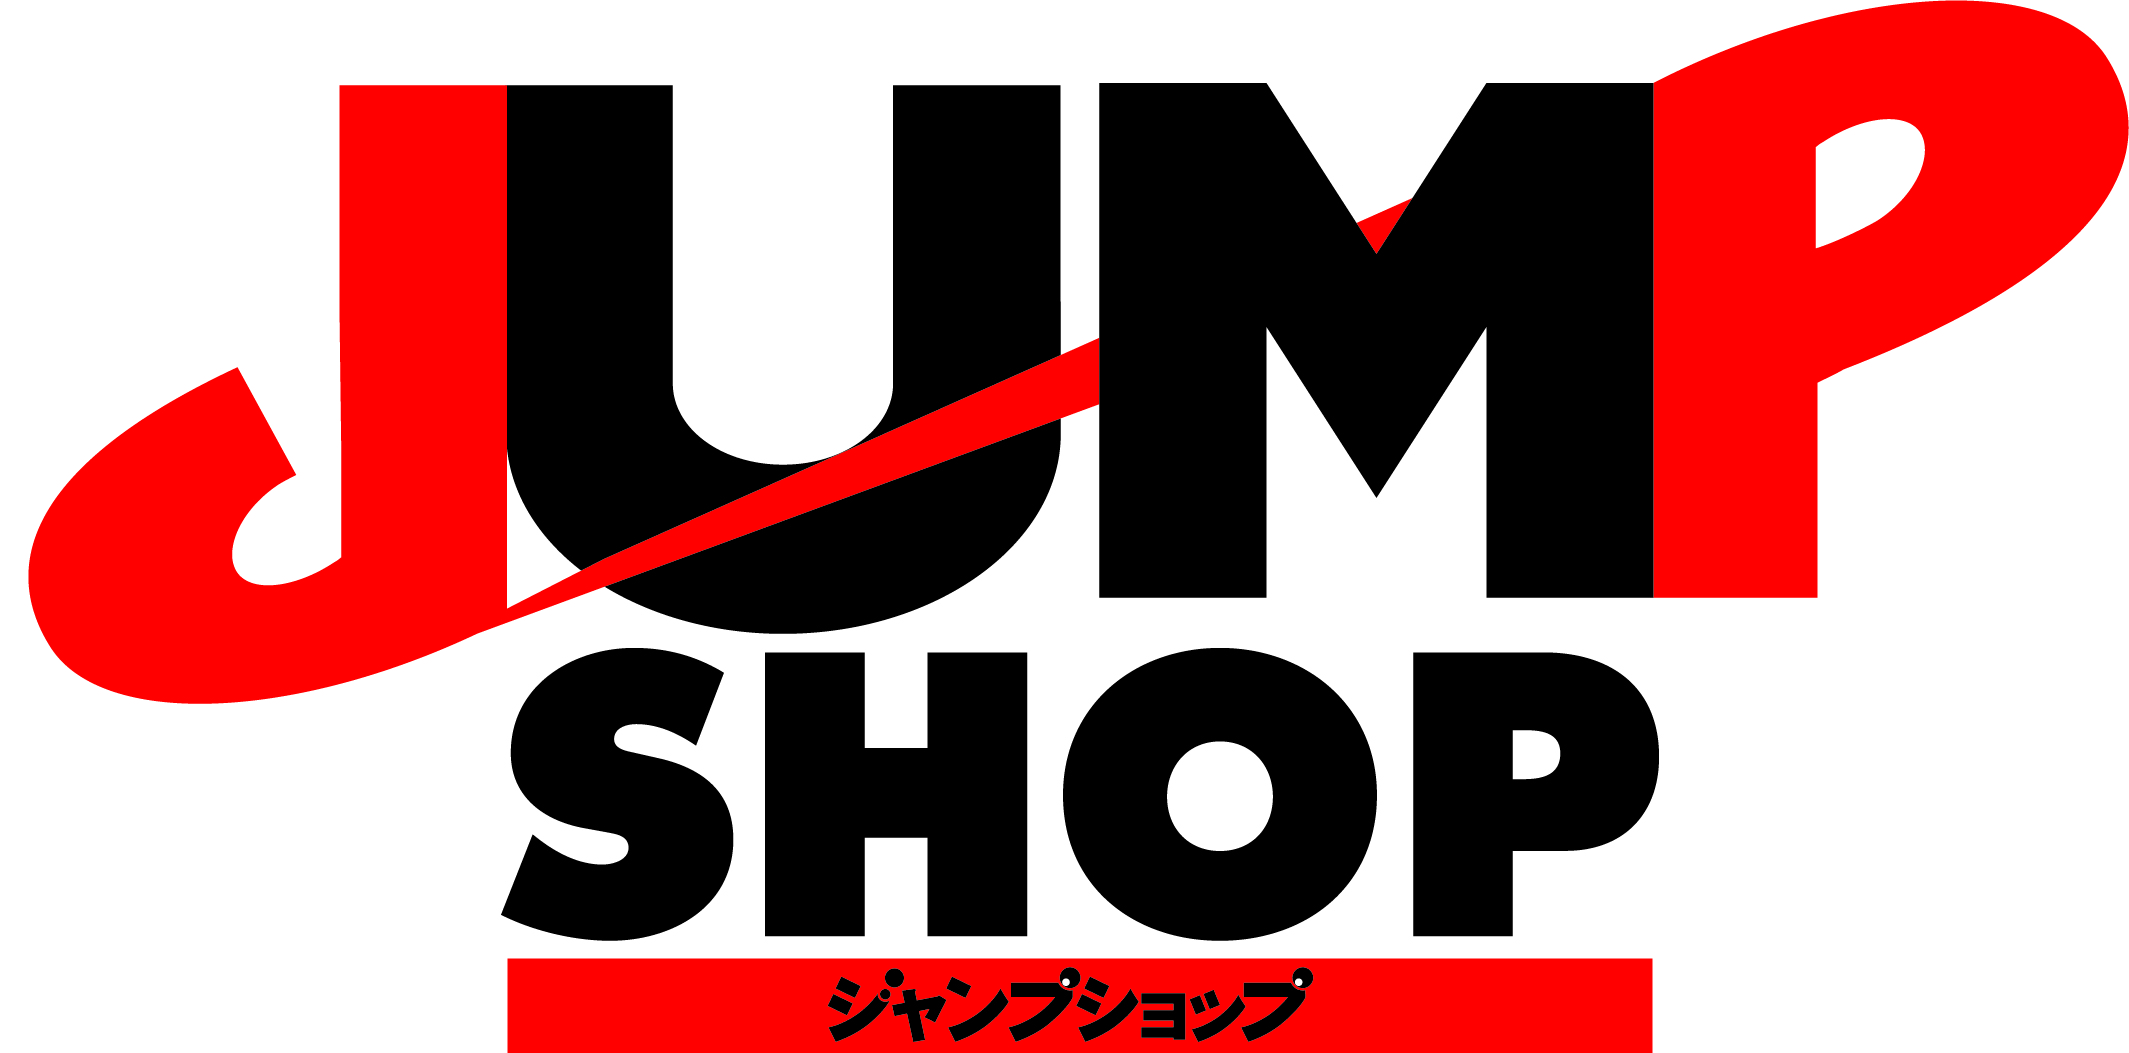 6月14日 日 期間限定 鬼滅の刃 グッズショップin Jump Shop東京 アクアシティお台場店のチケット情報 予約 購入 販売 ライヴポケット